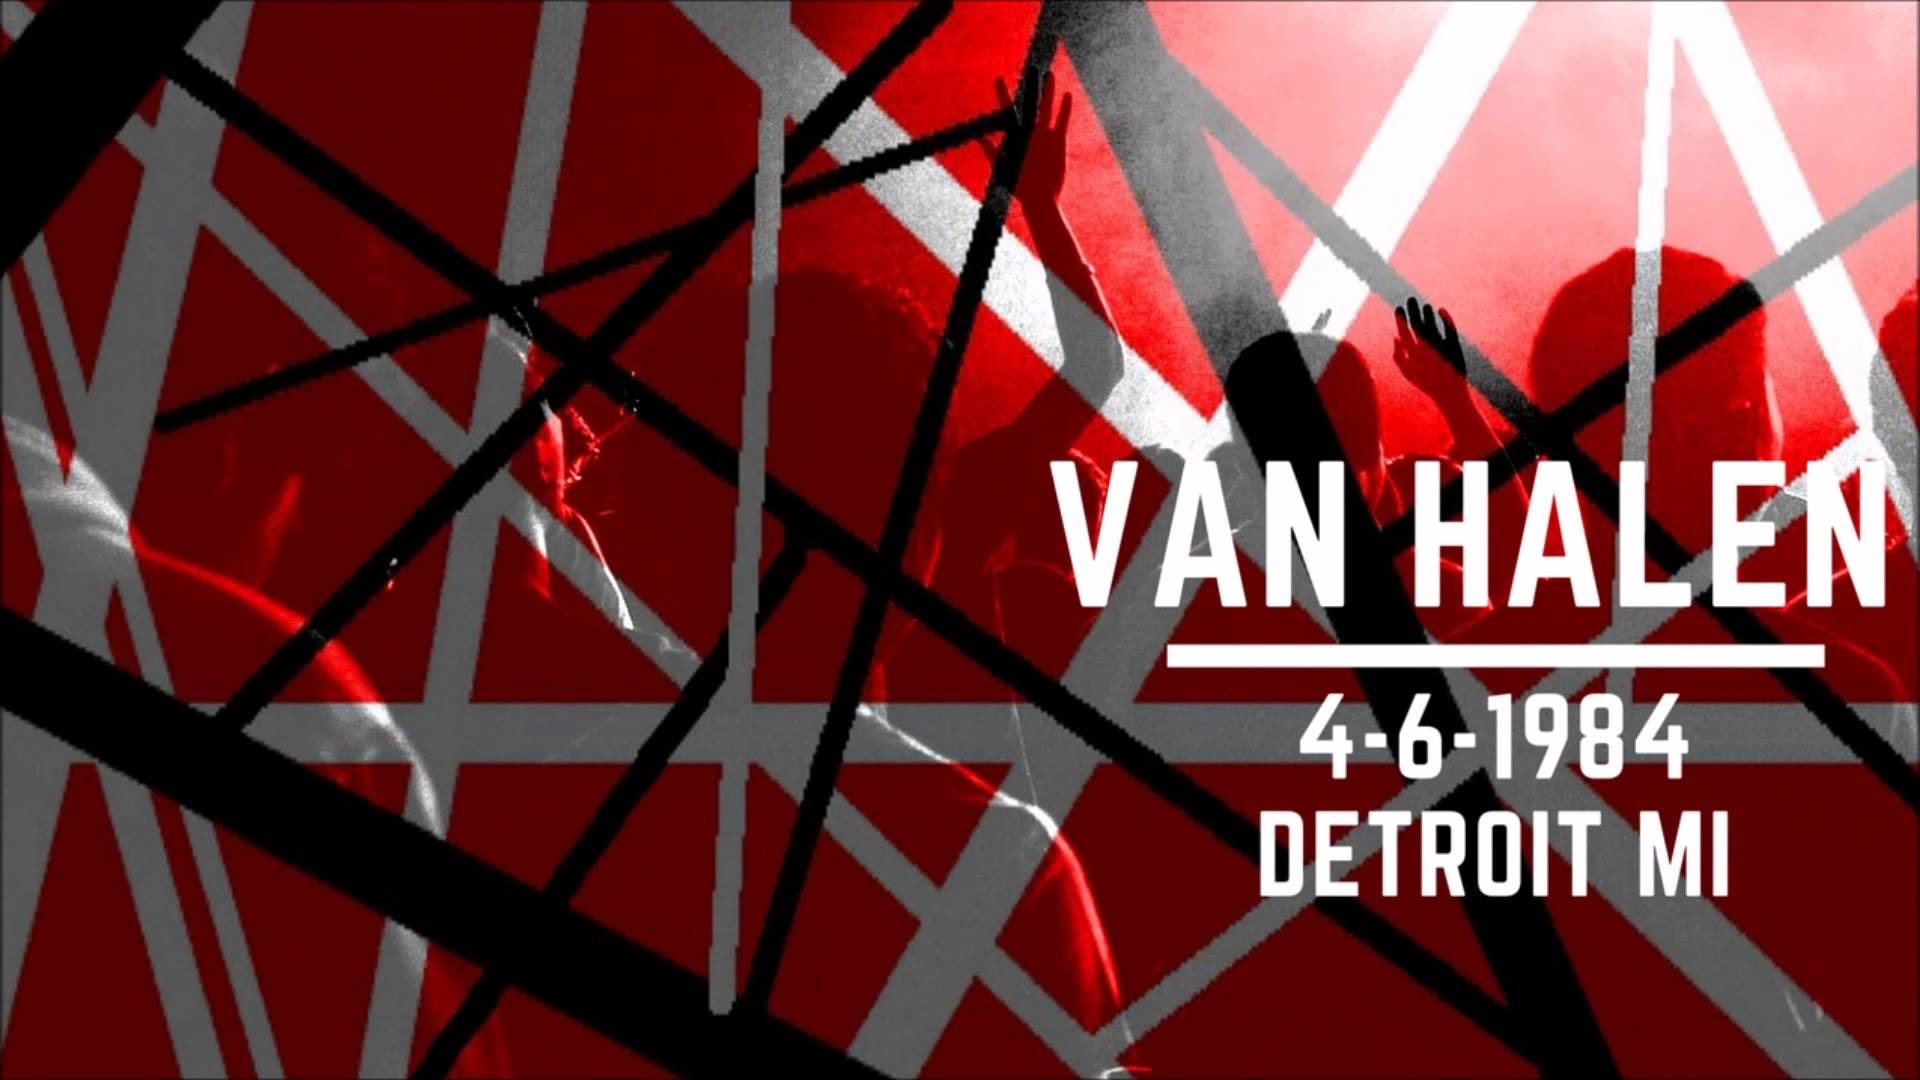 1920x1080  Van Halen|Eddie Van Halen Performs EVH Guitar Solo live at Cobo  Hall in Detroit 4-6-1984